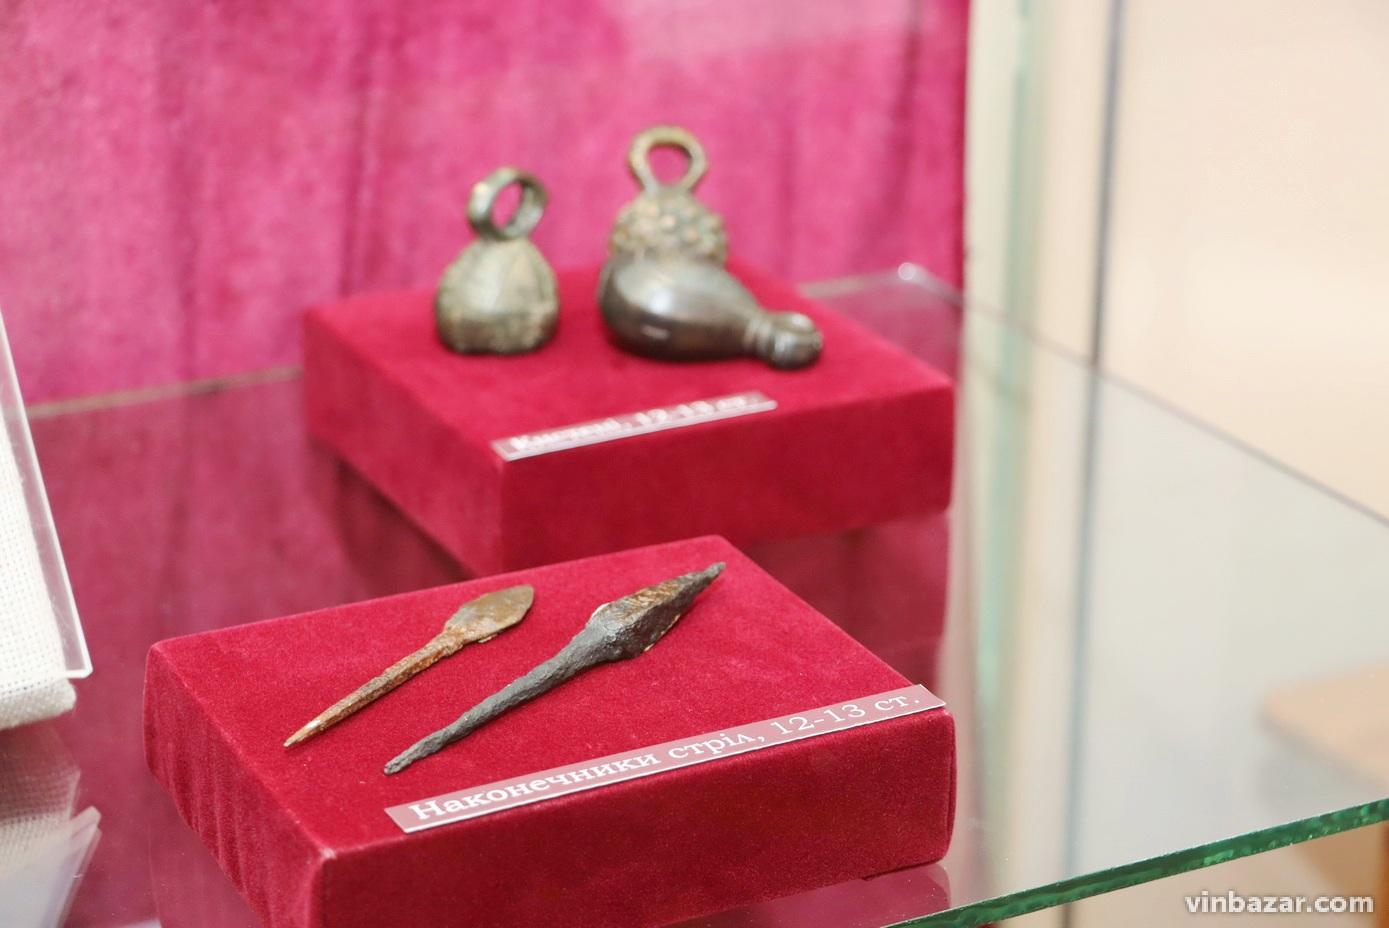 «Від каменюки до базуки»: у Вінницькому музеї представили виставку зброї та військового спорядження (Фото)